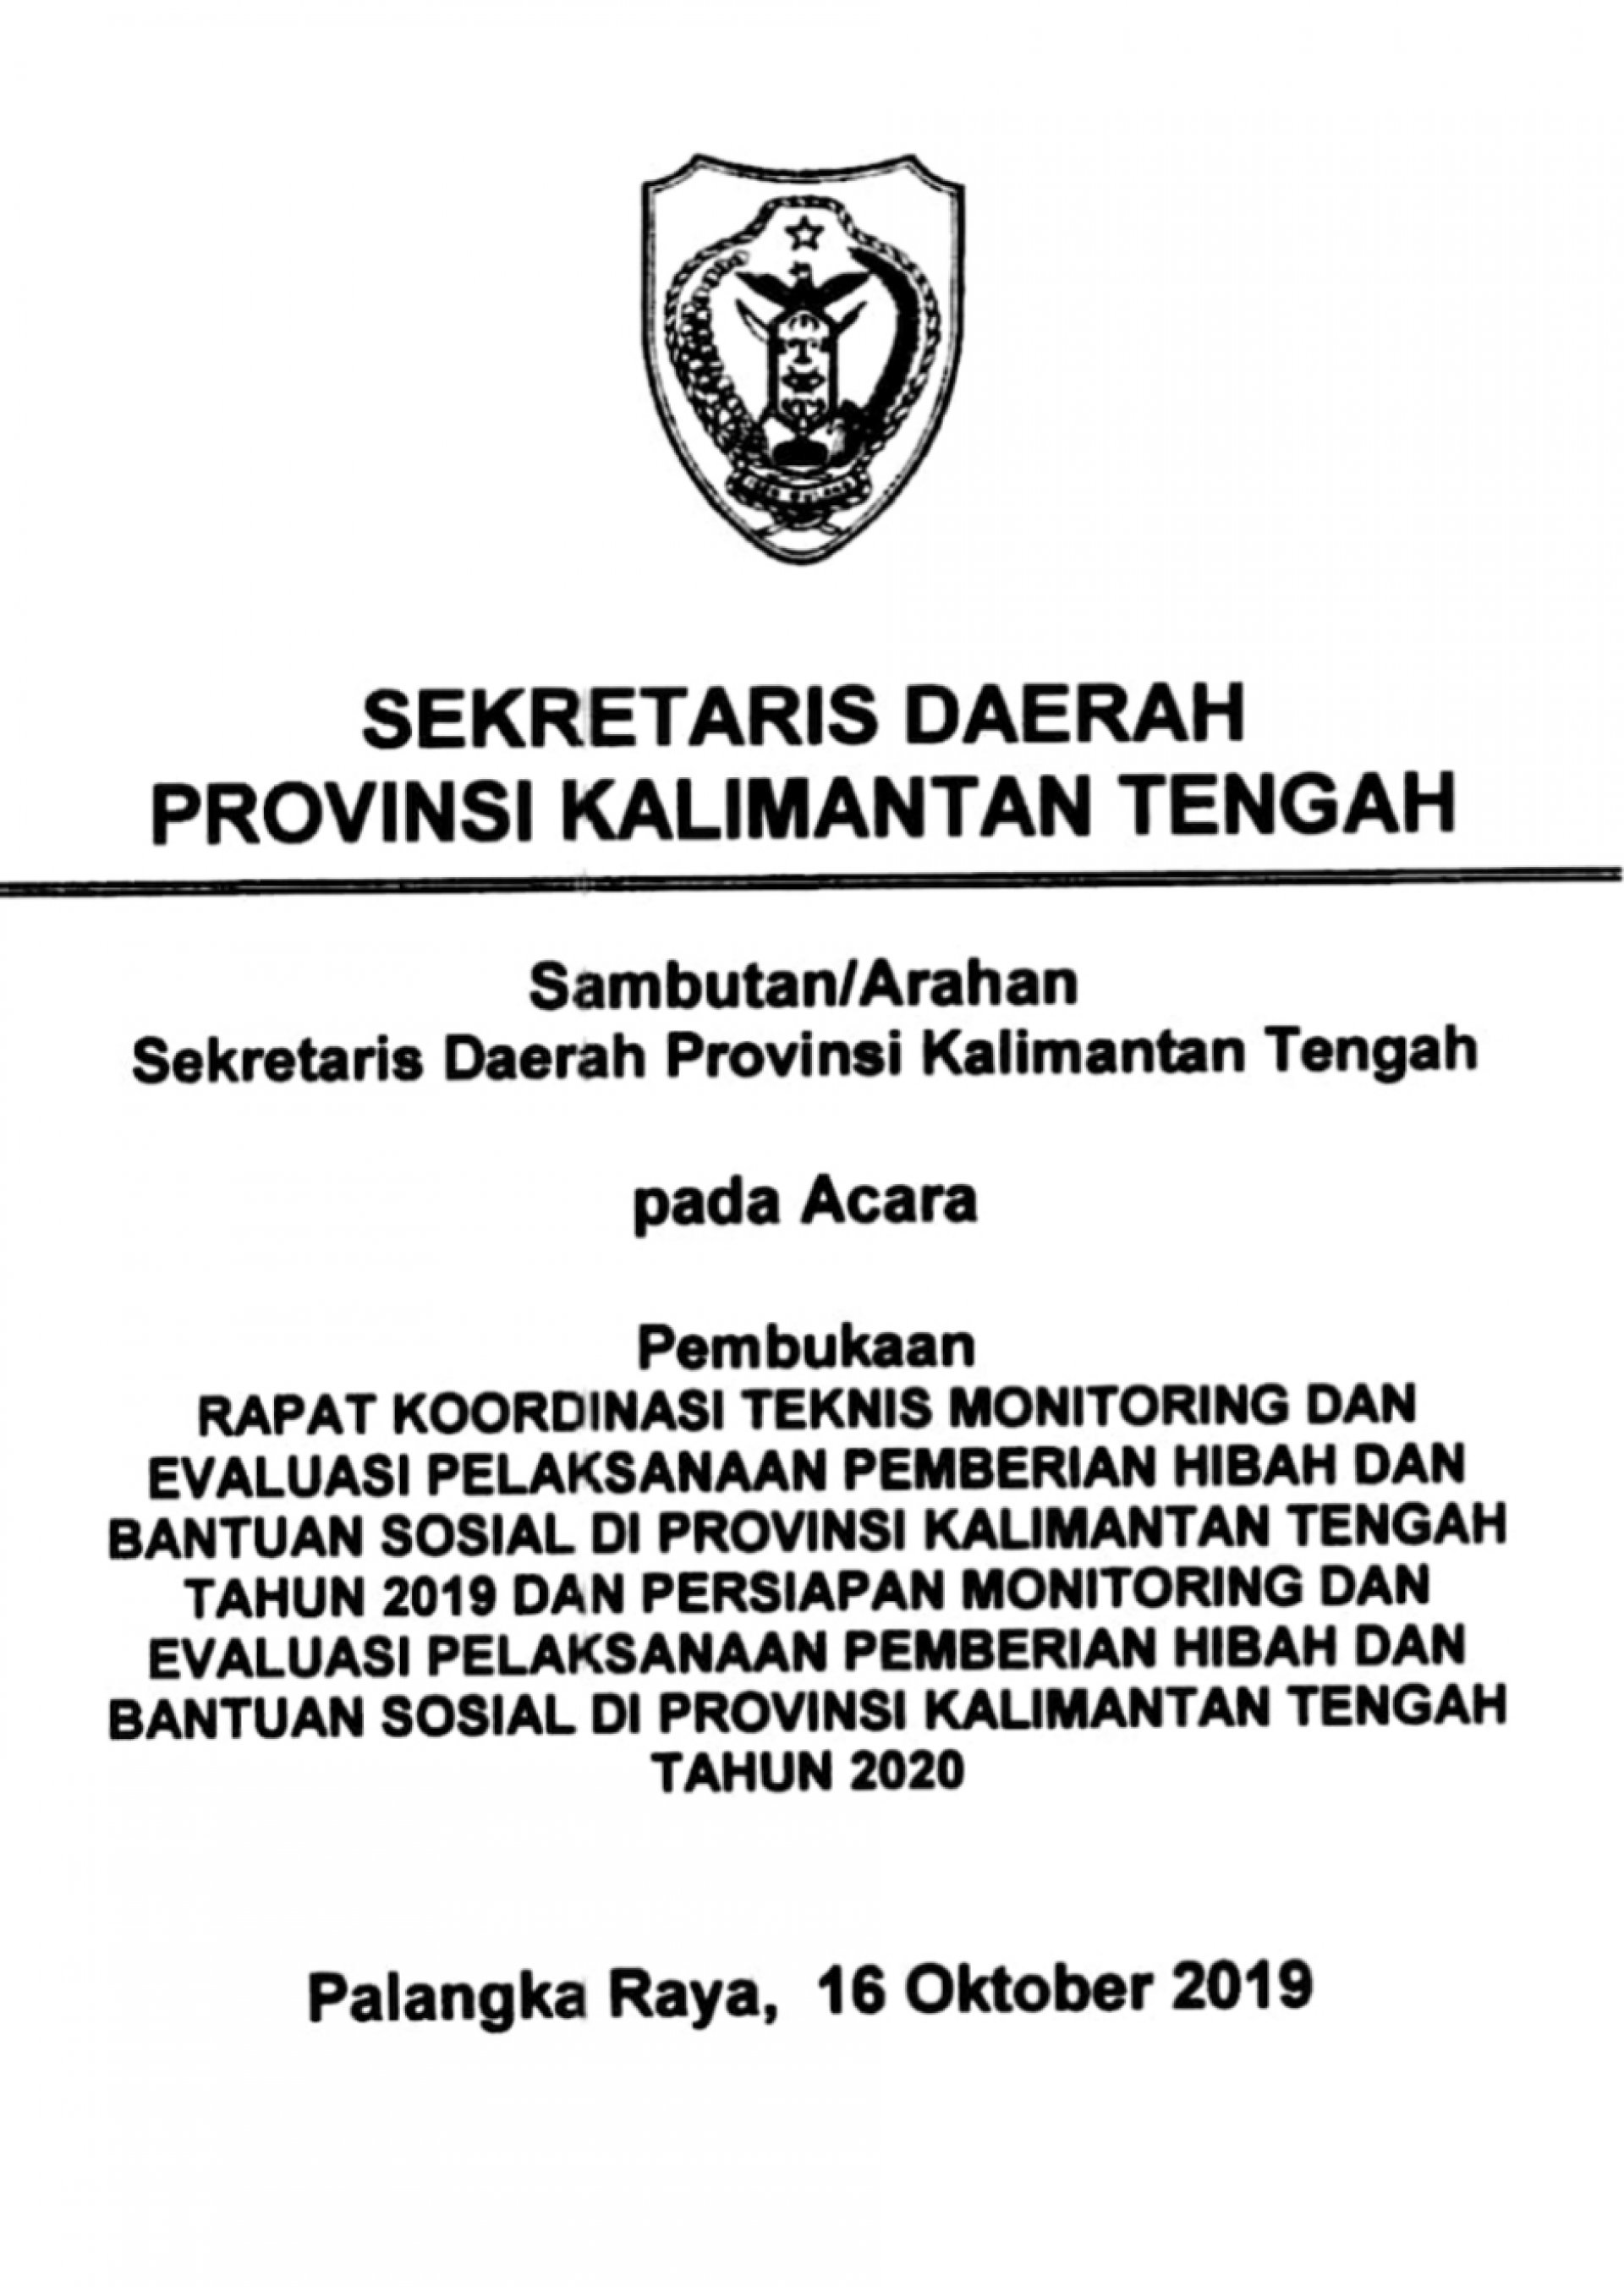 Sambutan Sekretaris Daerah Provinsi Kalimantan Tengah pada Acara Rakornis Monev Hibah dan Bansos Tahun 2019